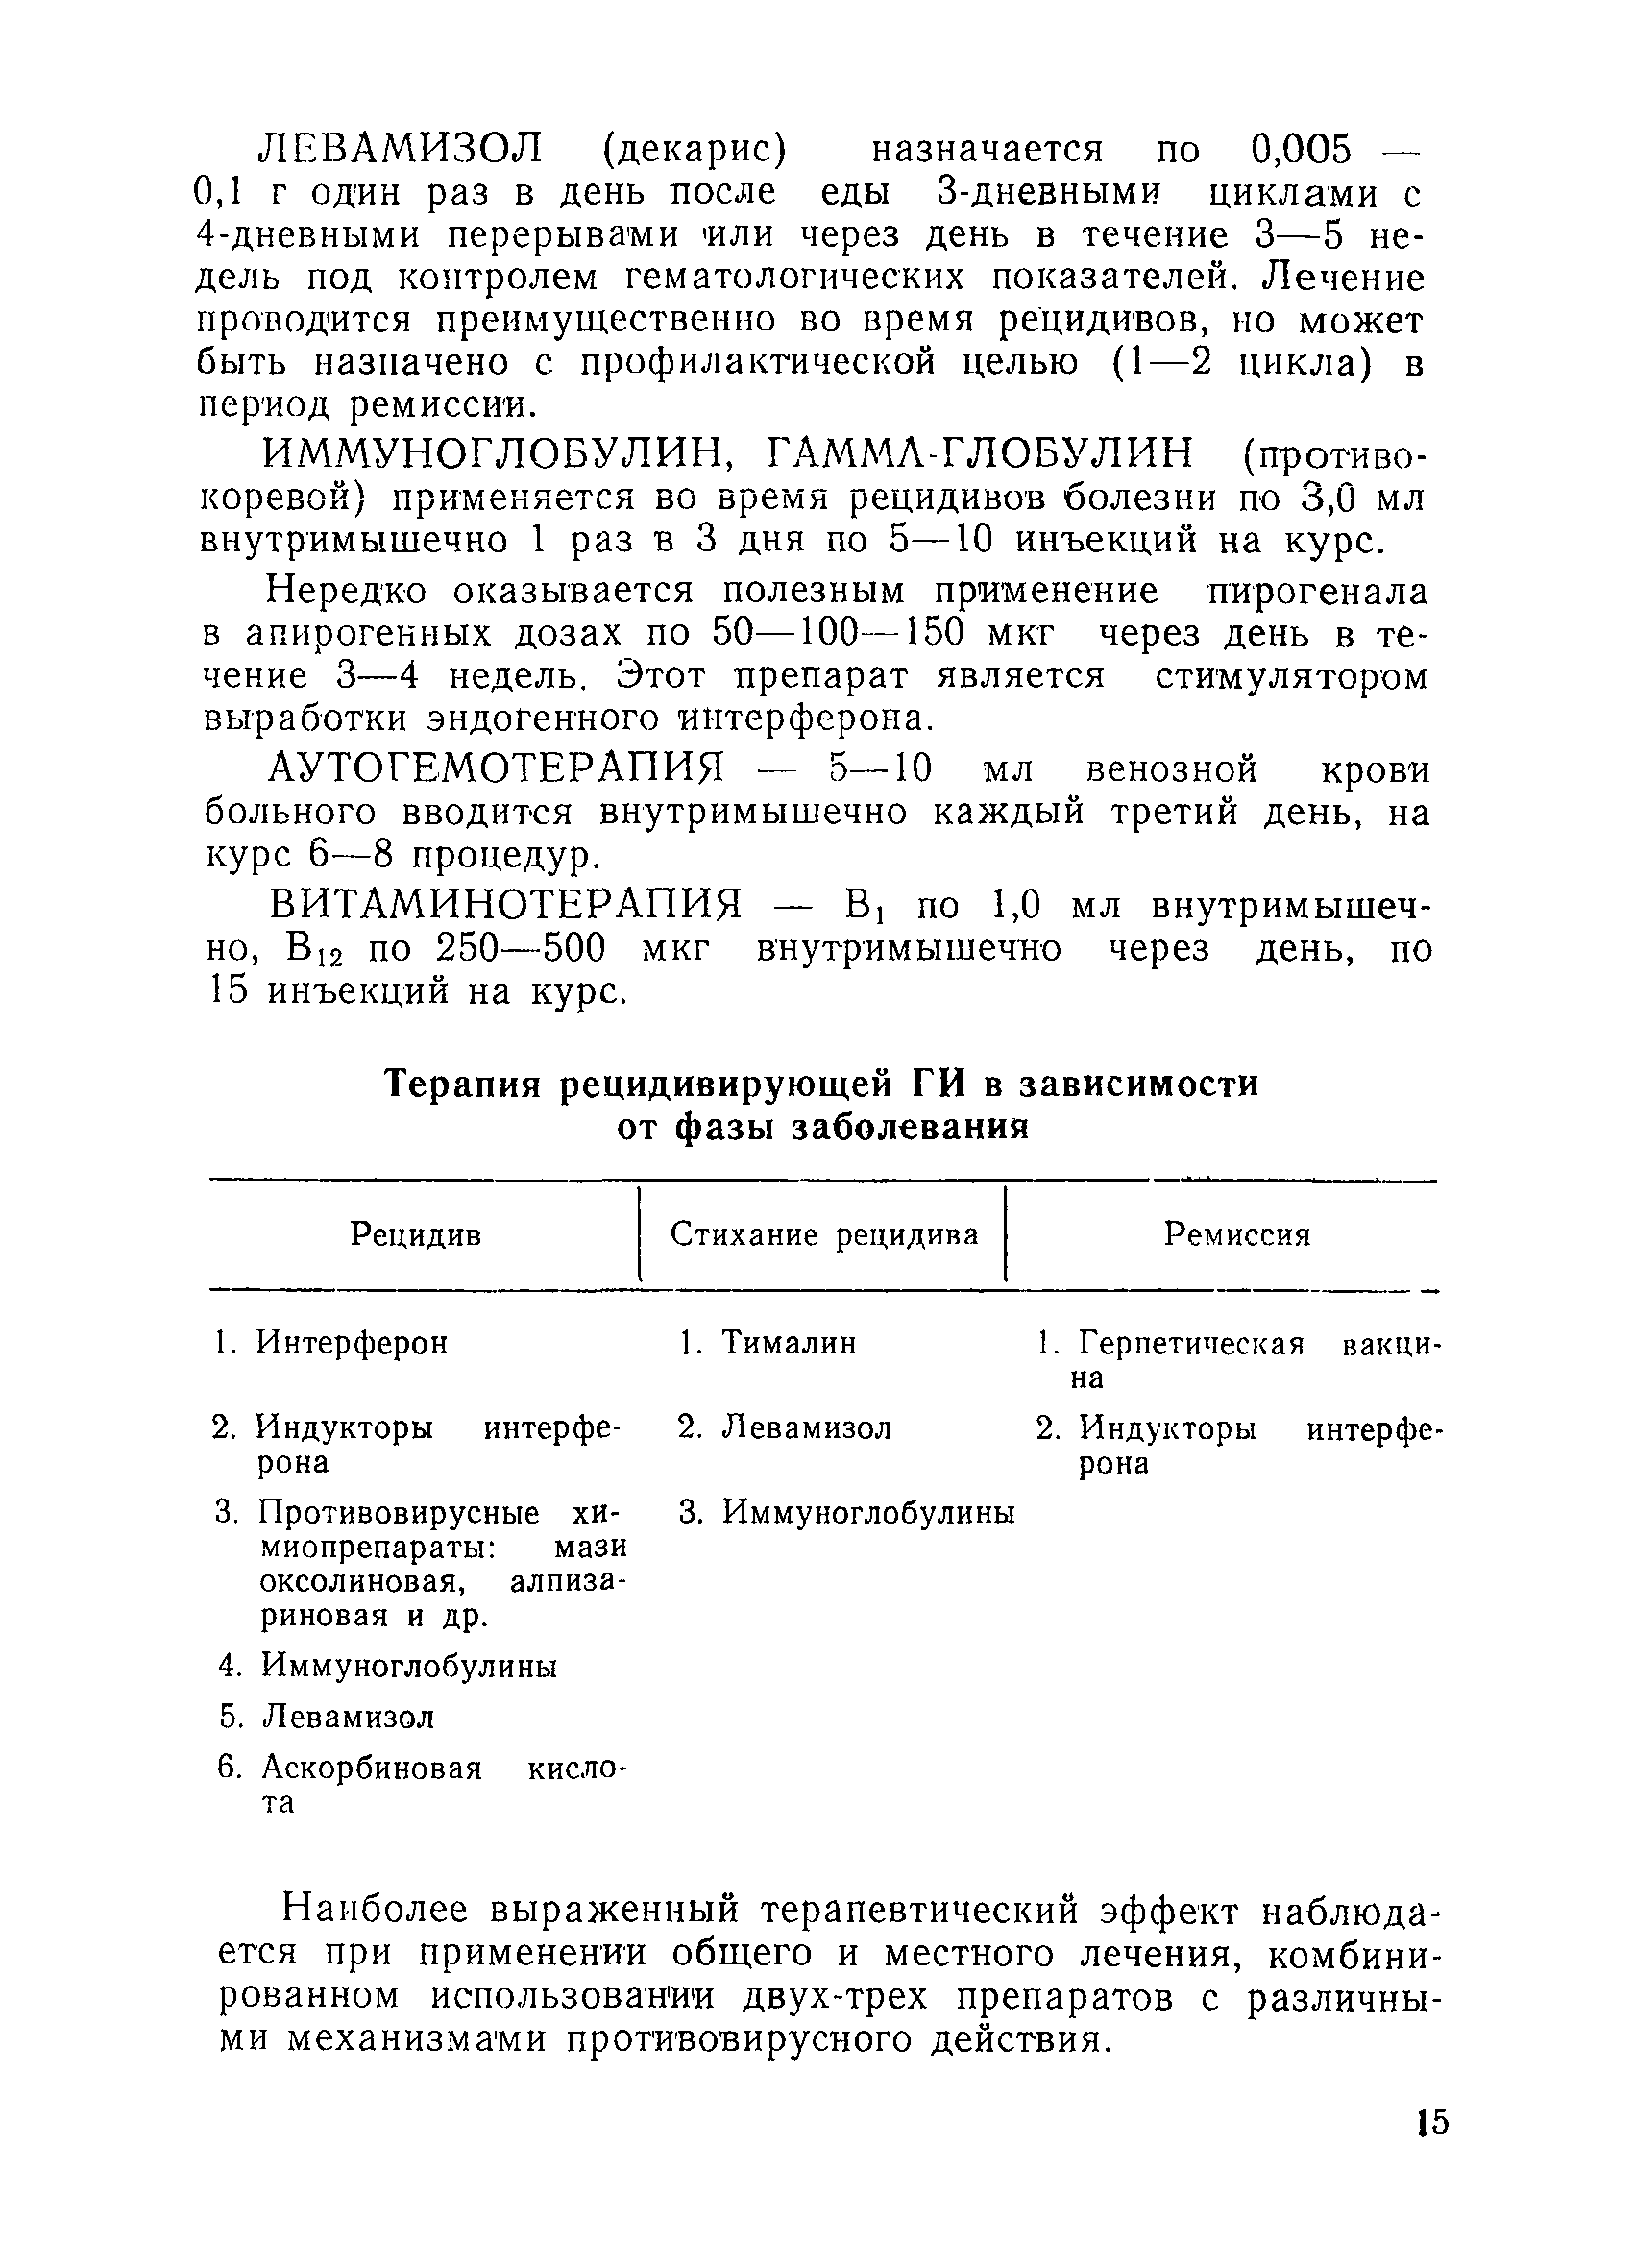 Методические рекомендации 10-11/46